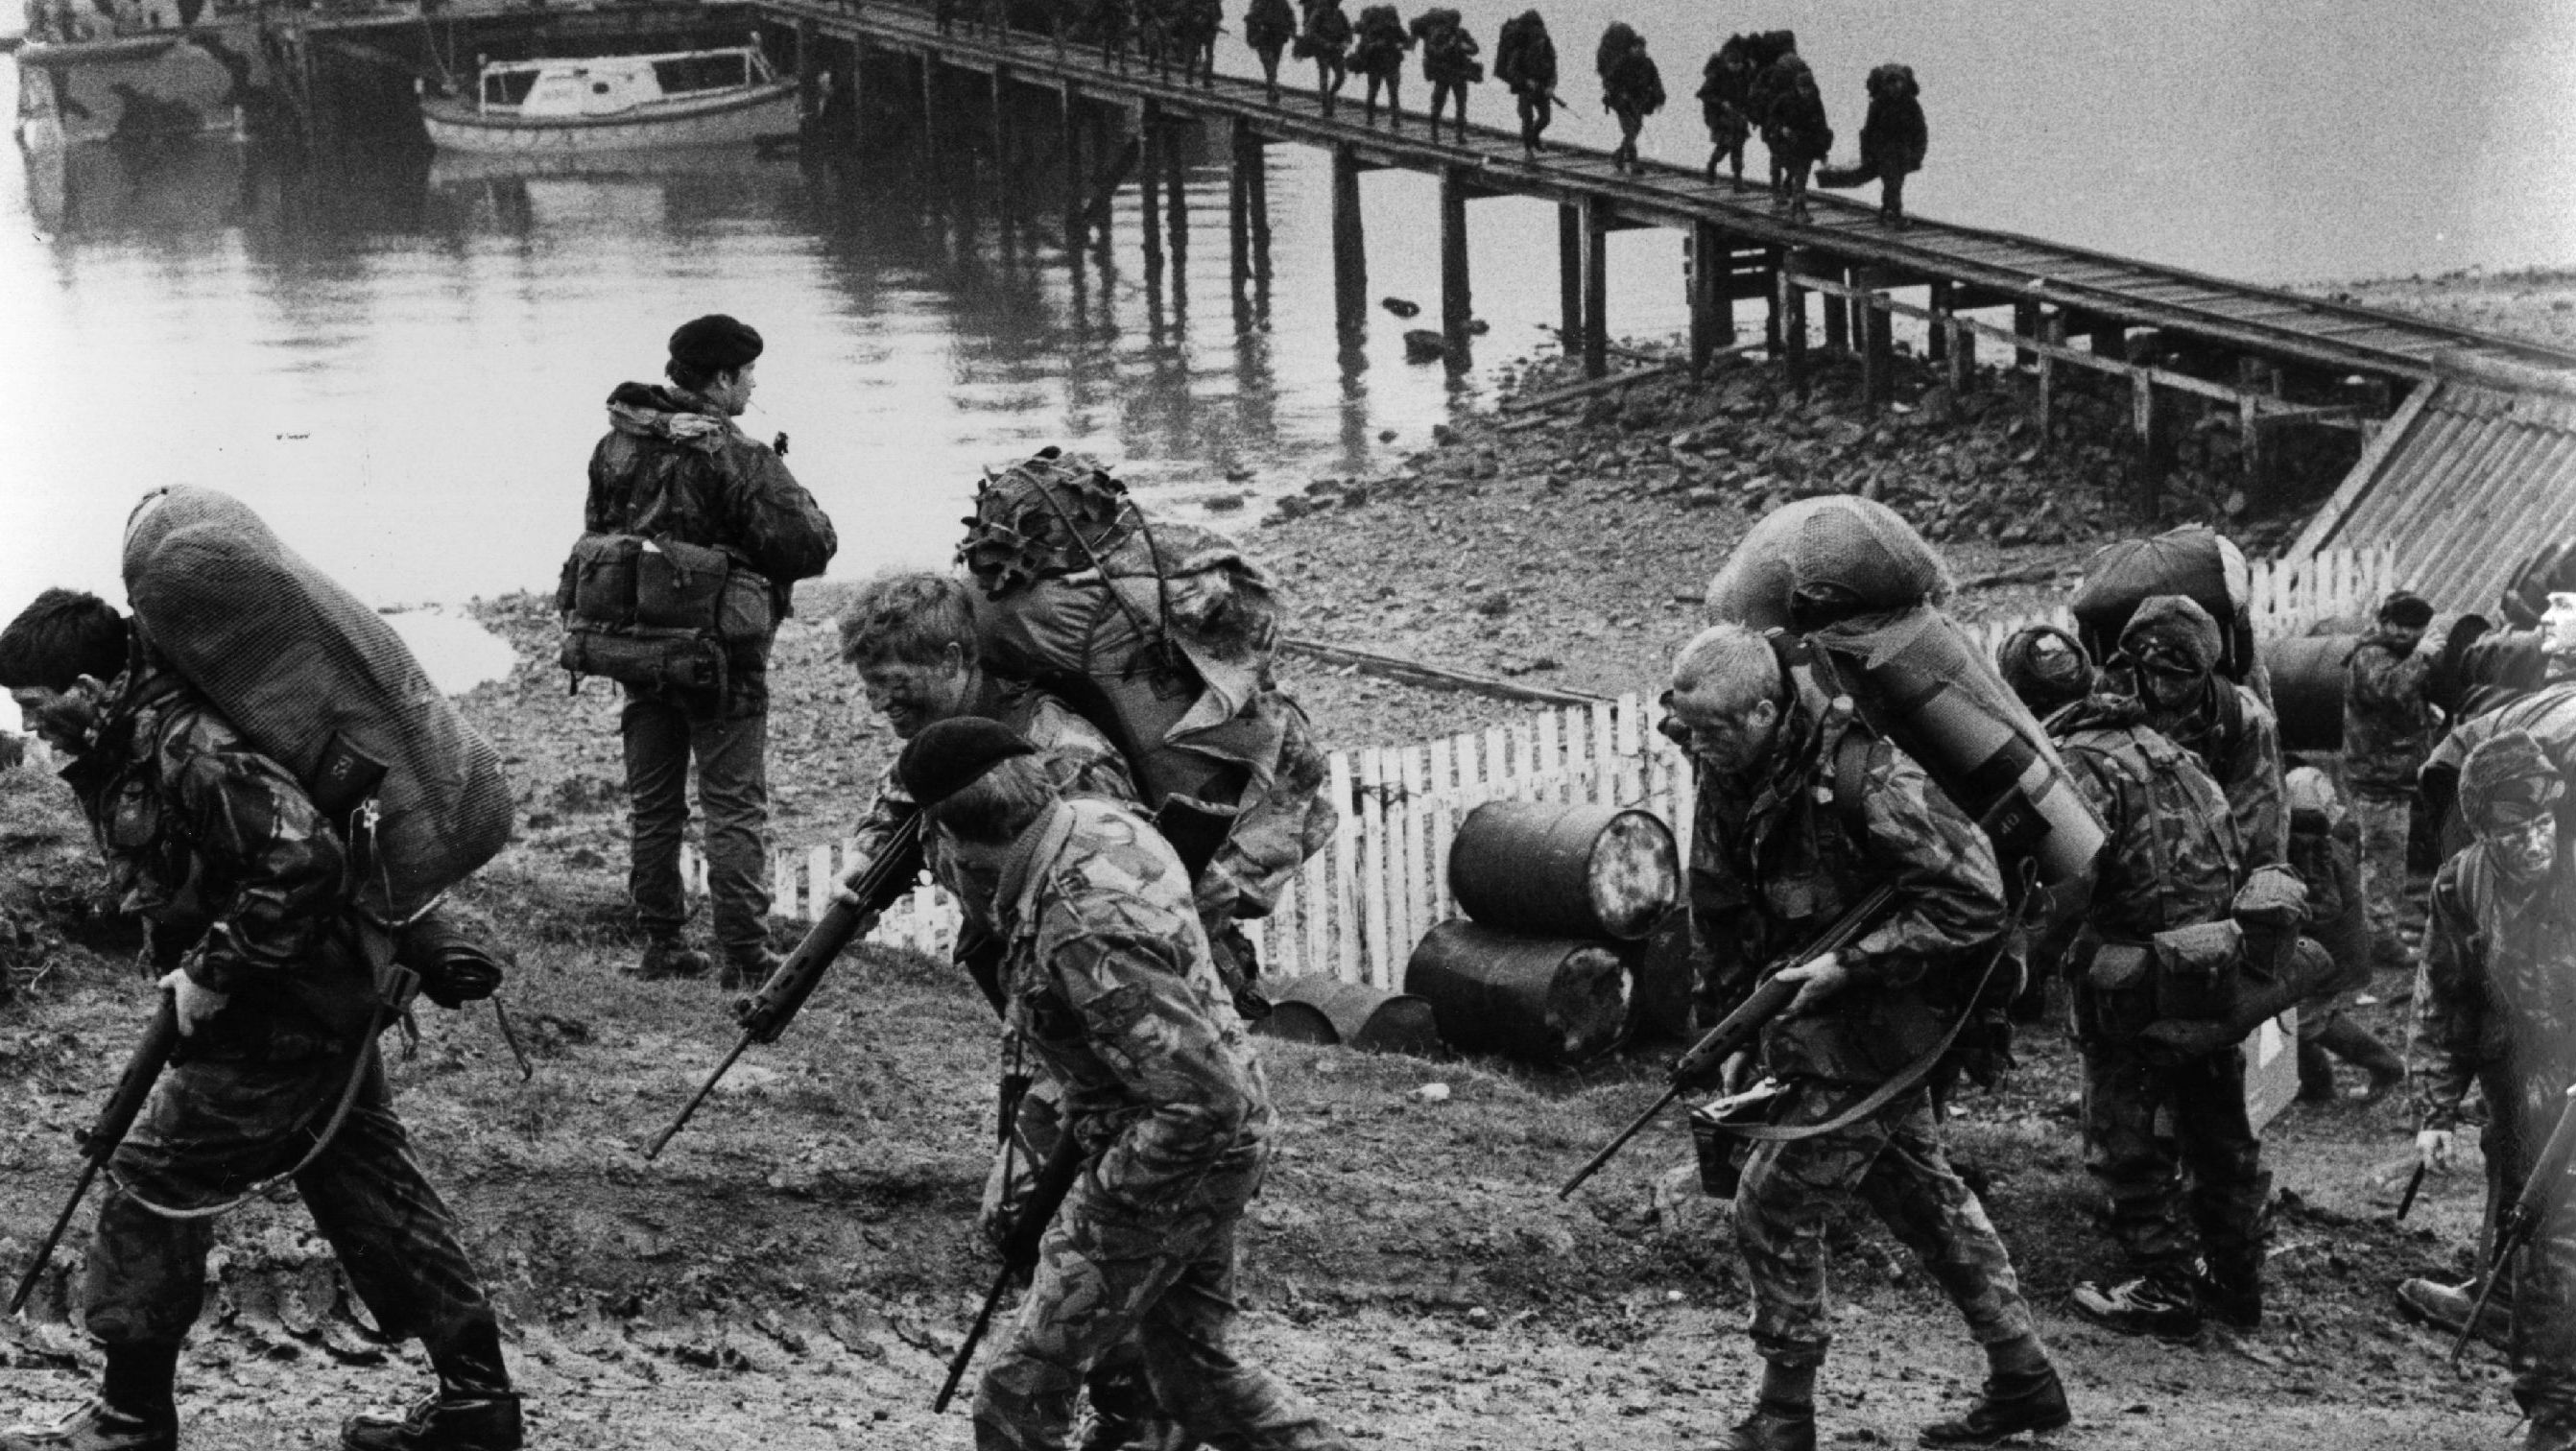 UK troops arrive on the Falklands Islands